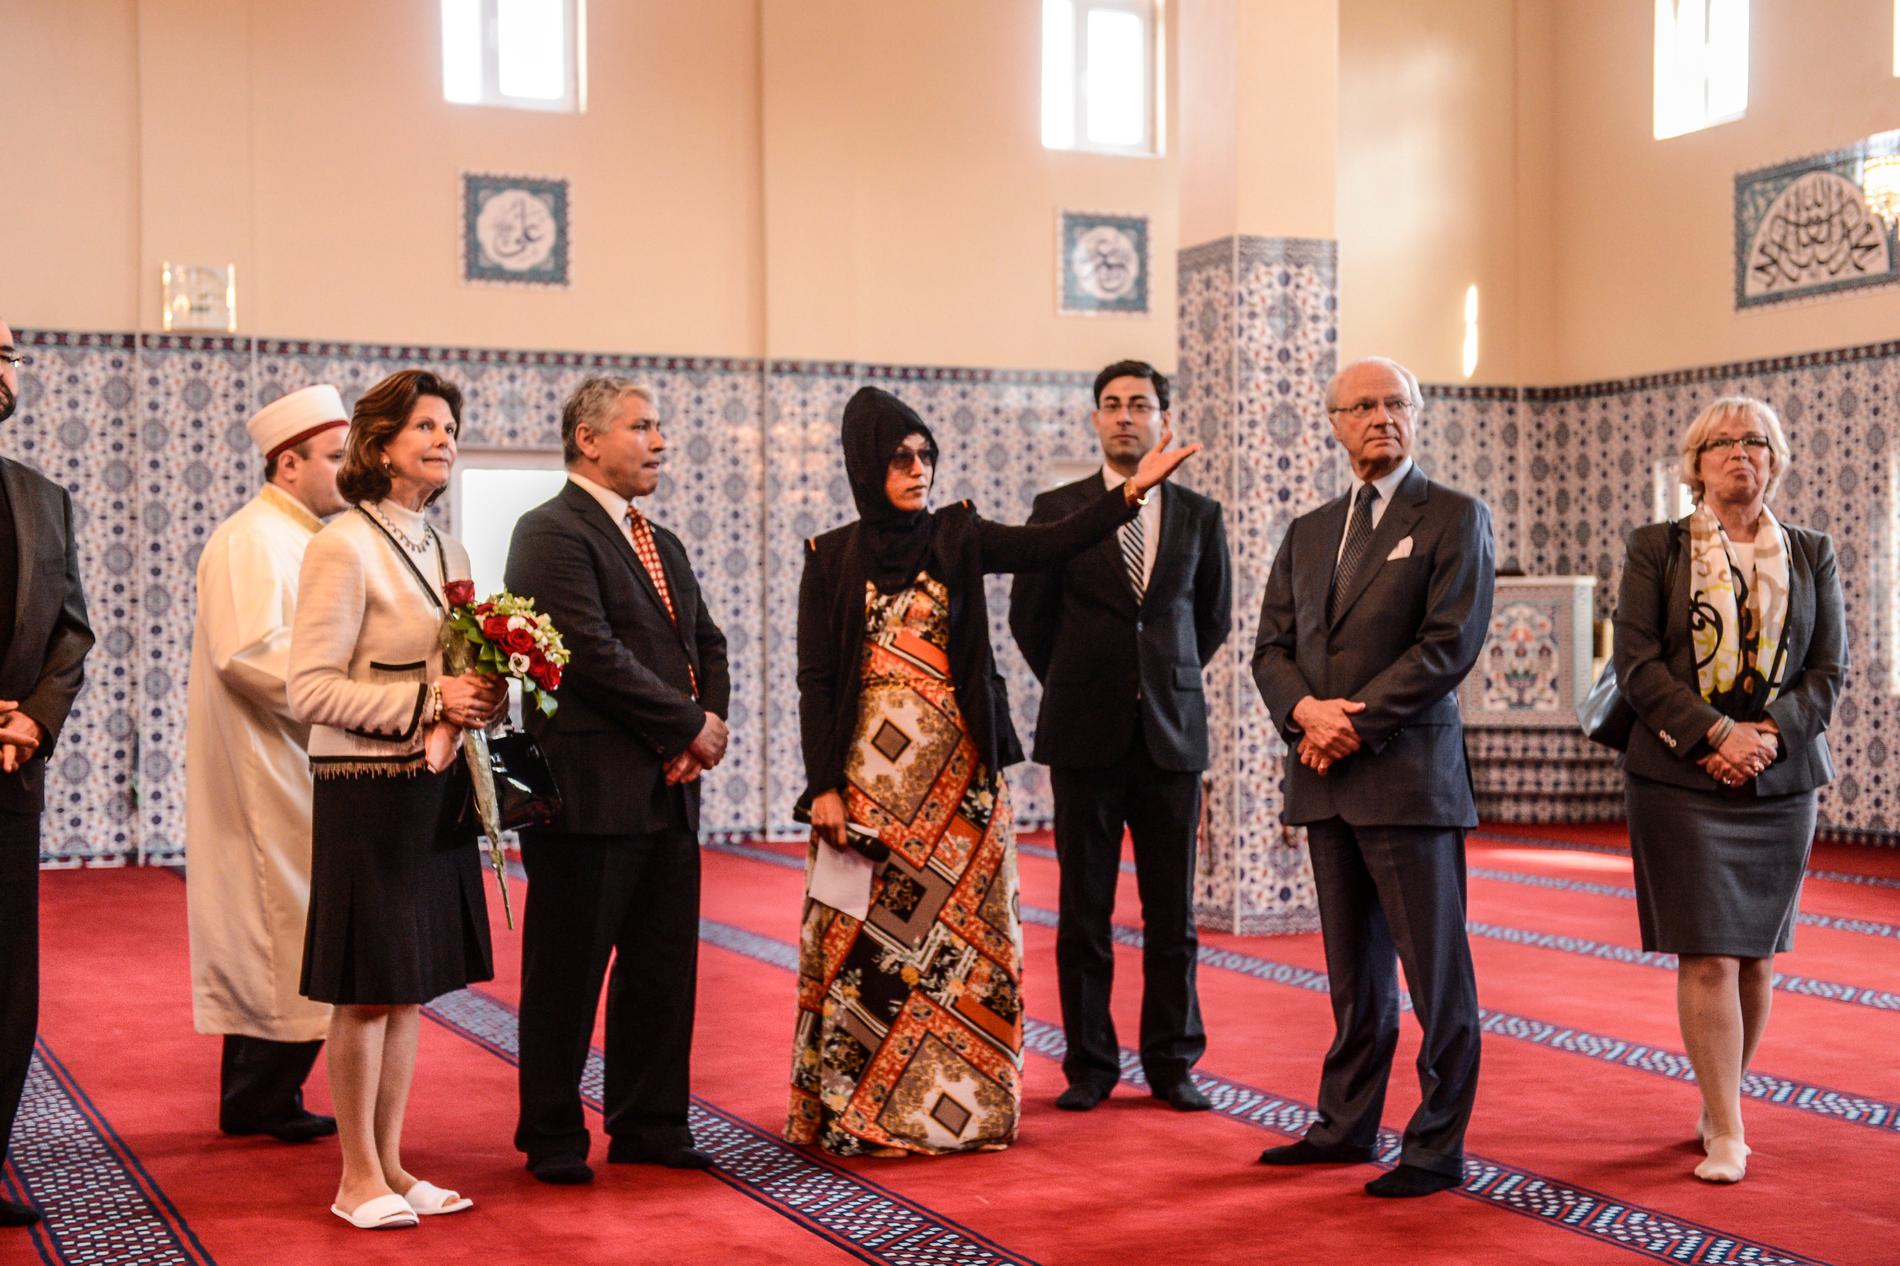 Kungen och Silvia under sitt besök i Fittja moské.